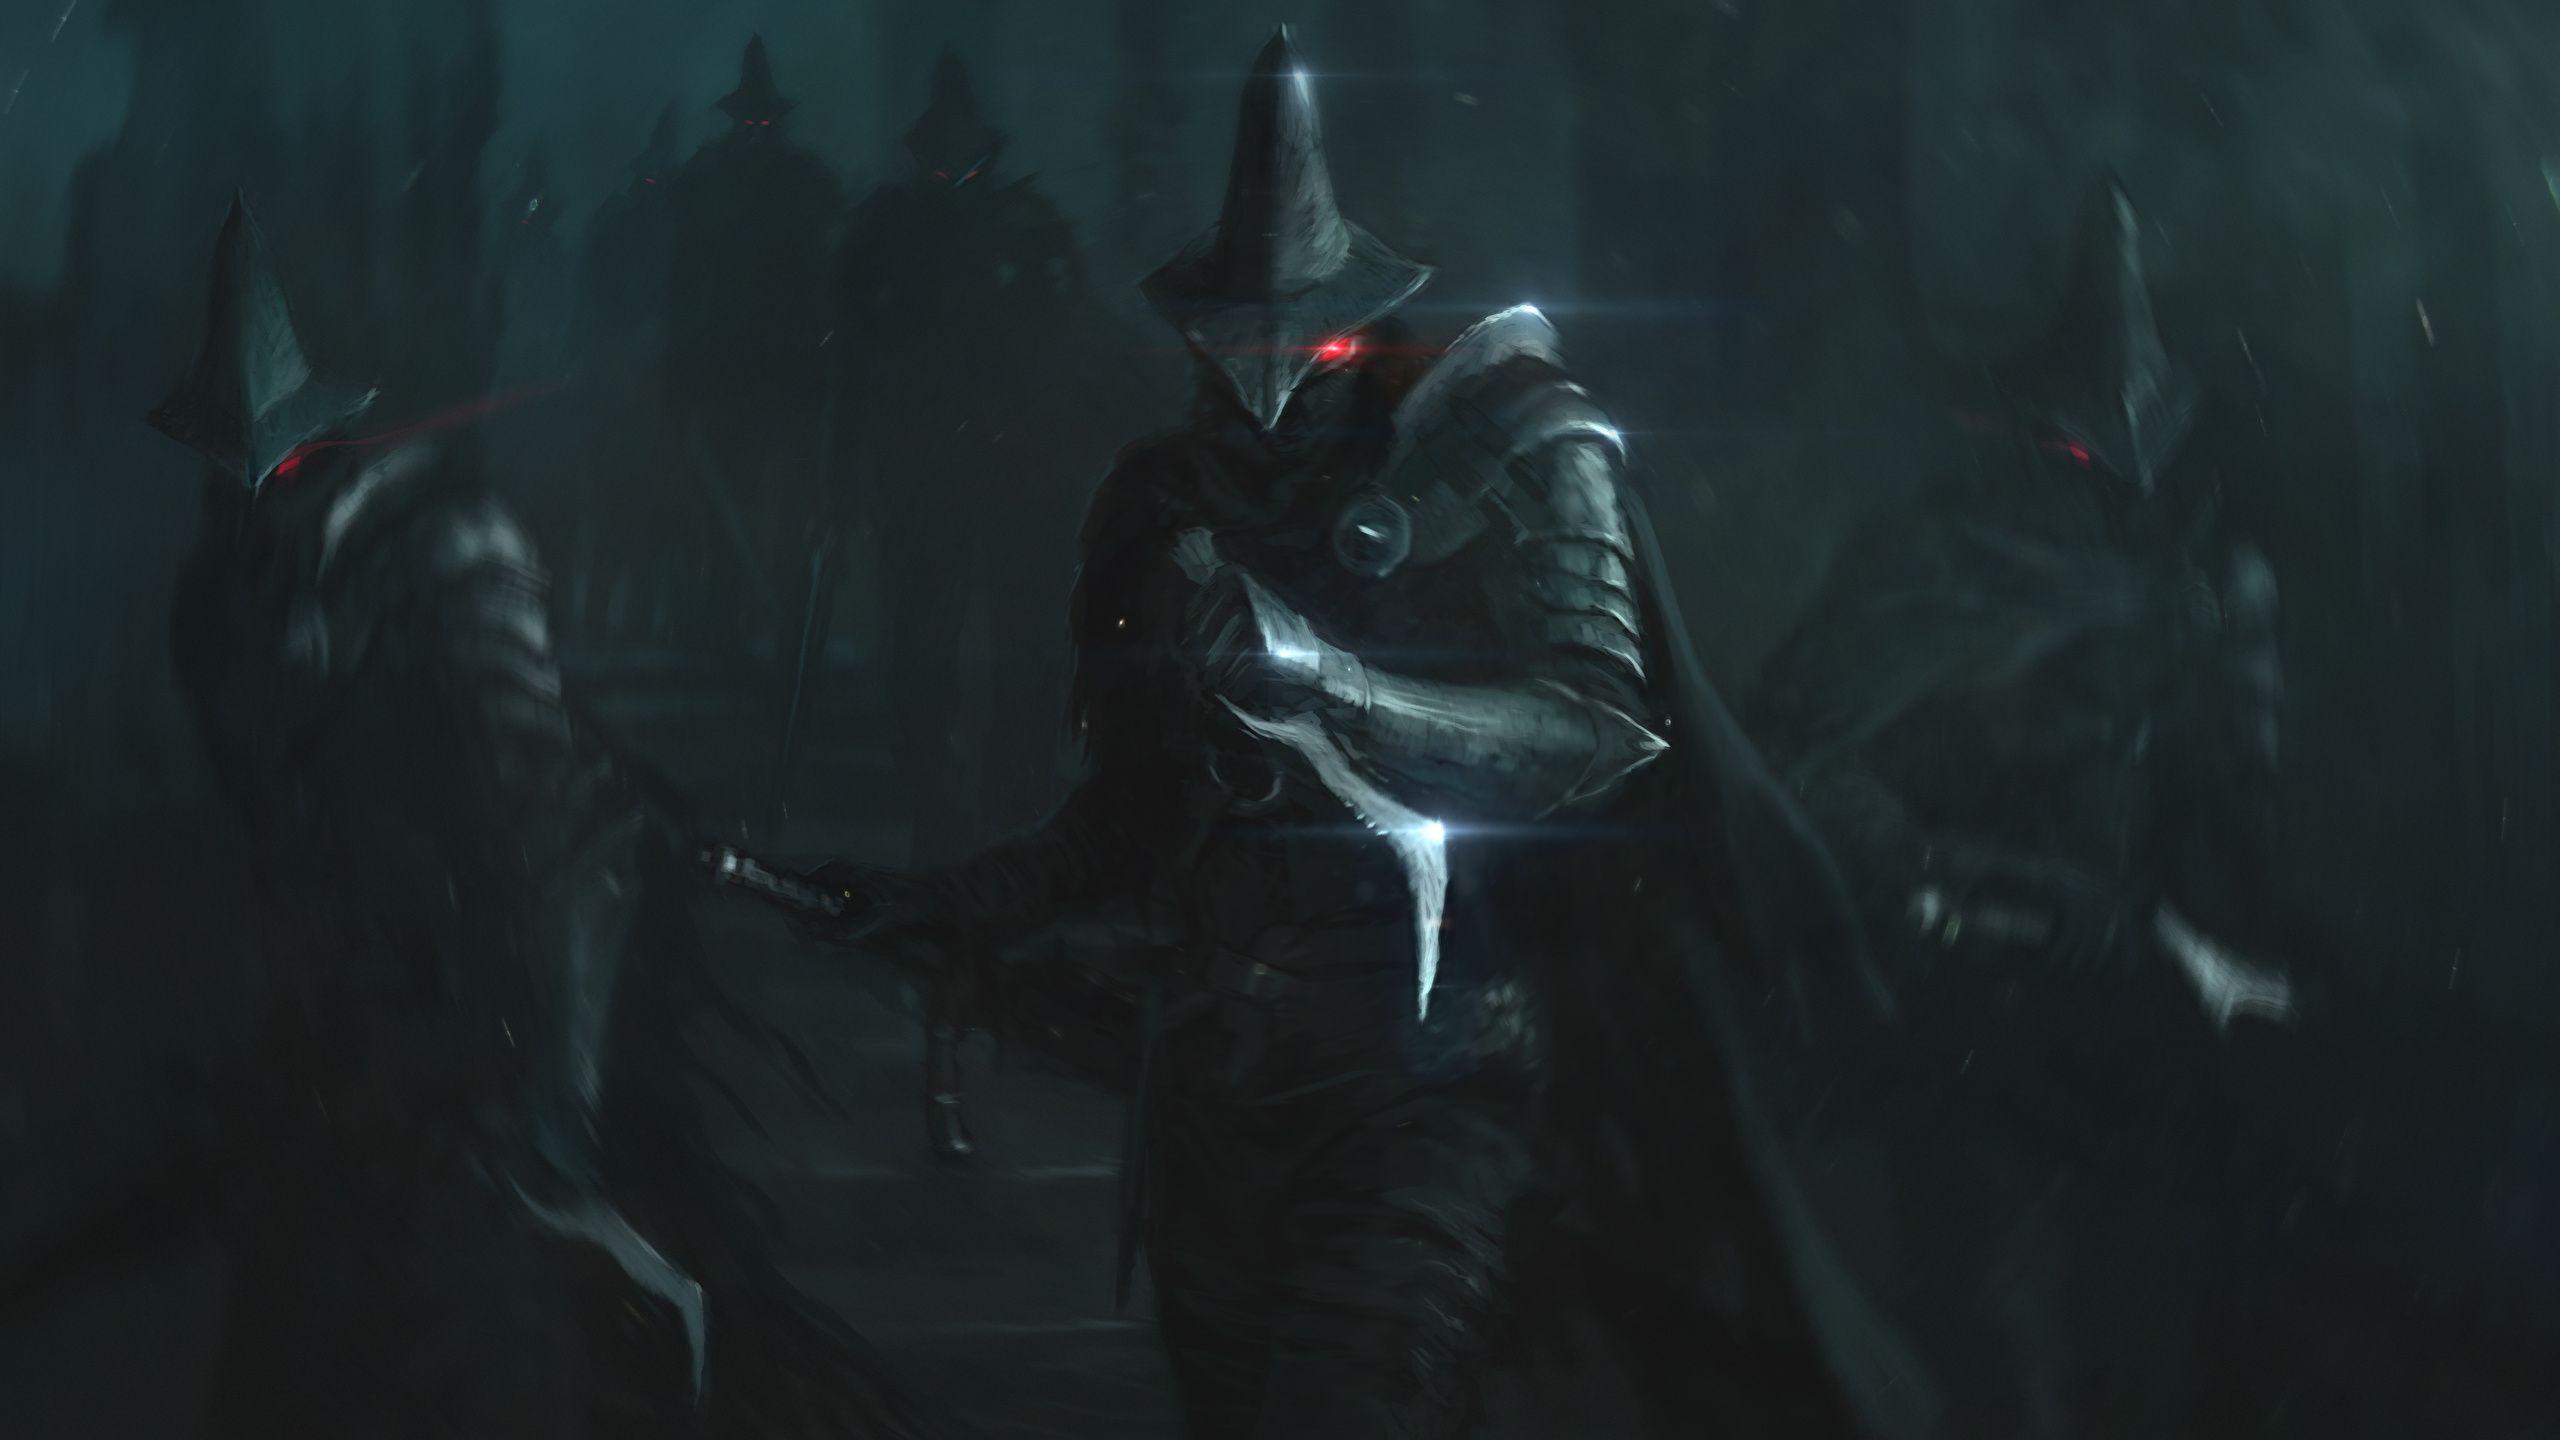 2560x1440 Hình nền Dark Souls Armor Warriors Trò chơi vdeo tưởng tượng 2560x1440